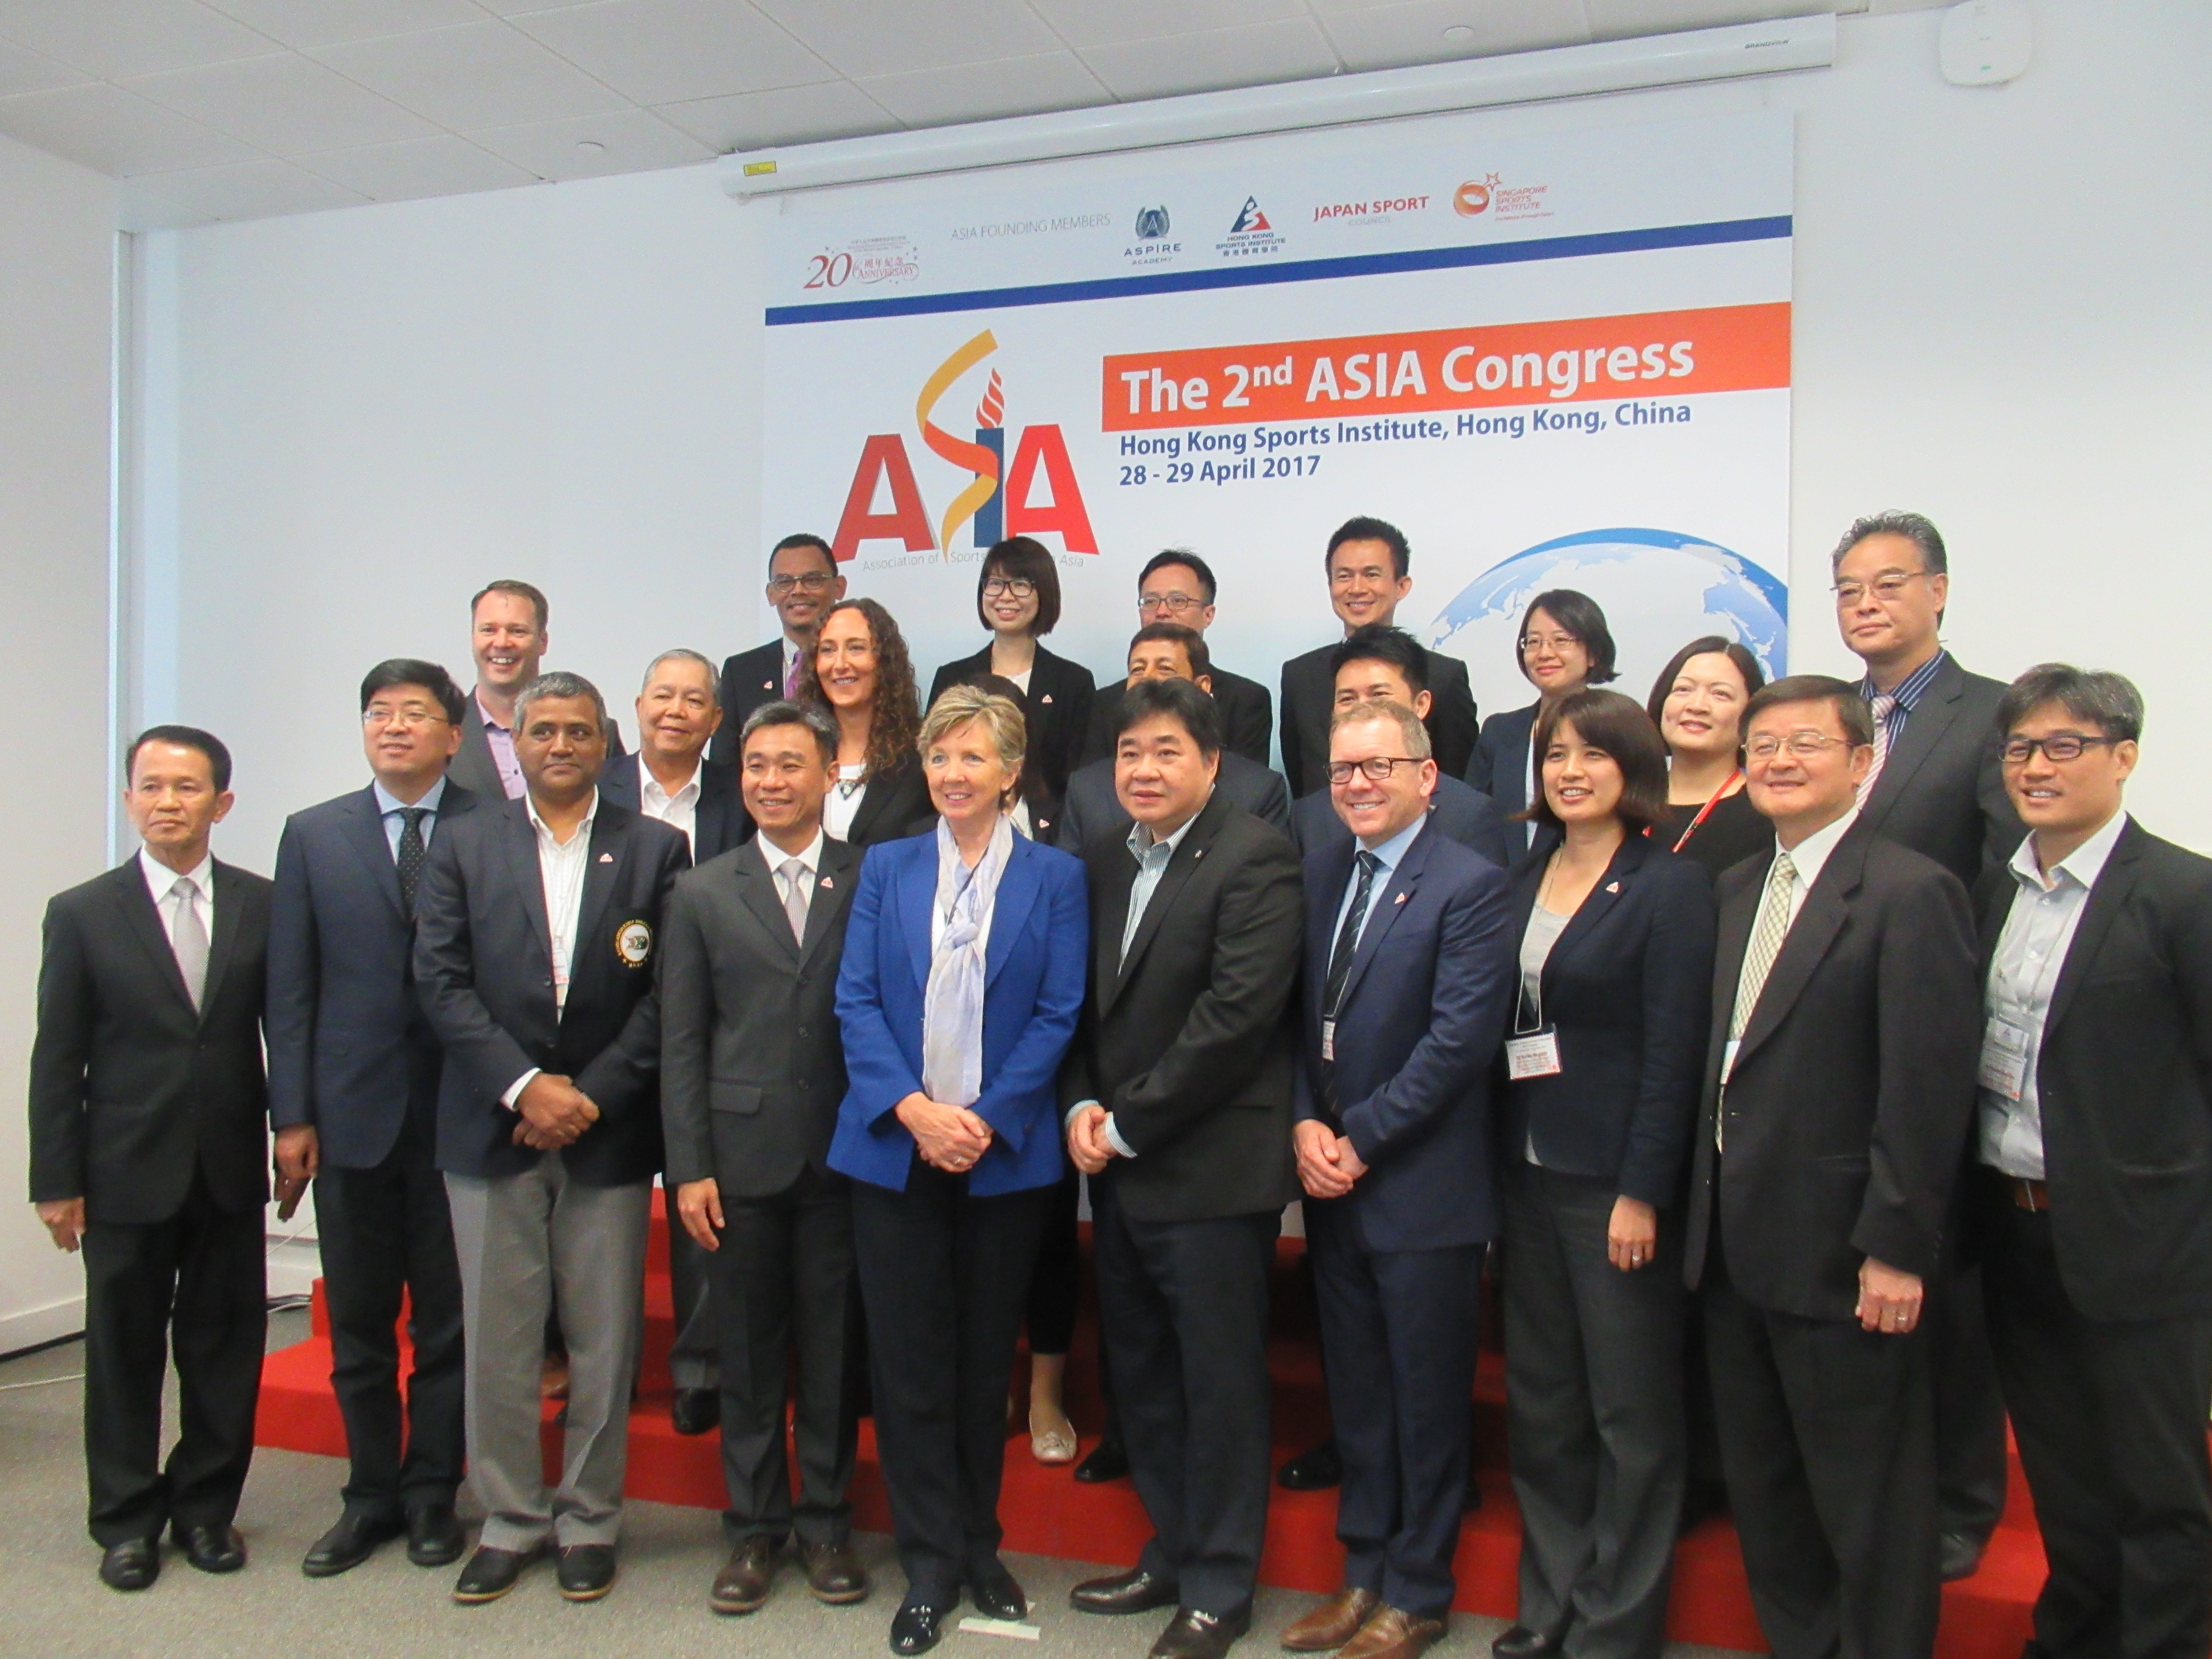 第2回アジアスポーツ研究・強化拠点連合(ASIA)コングレスの際の集合写真